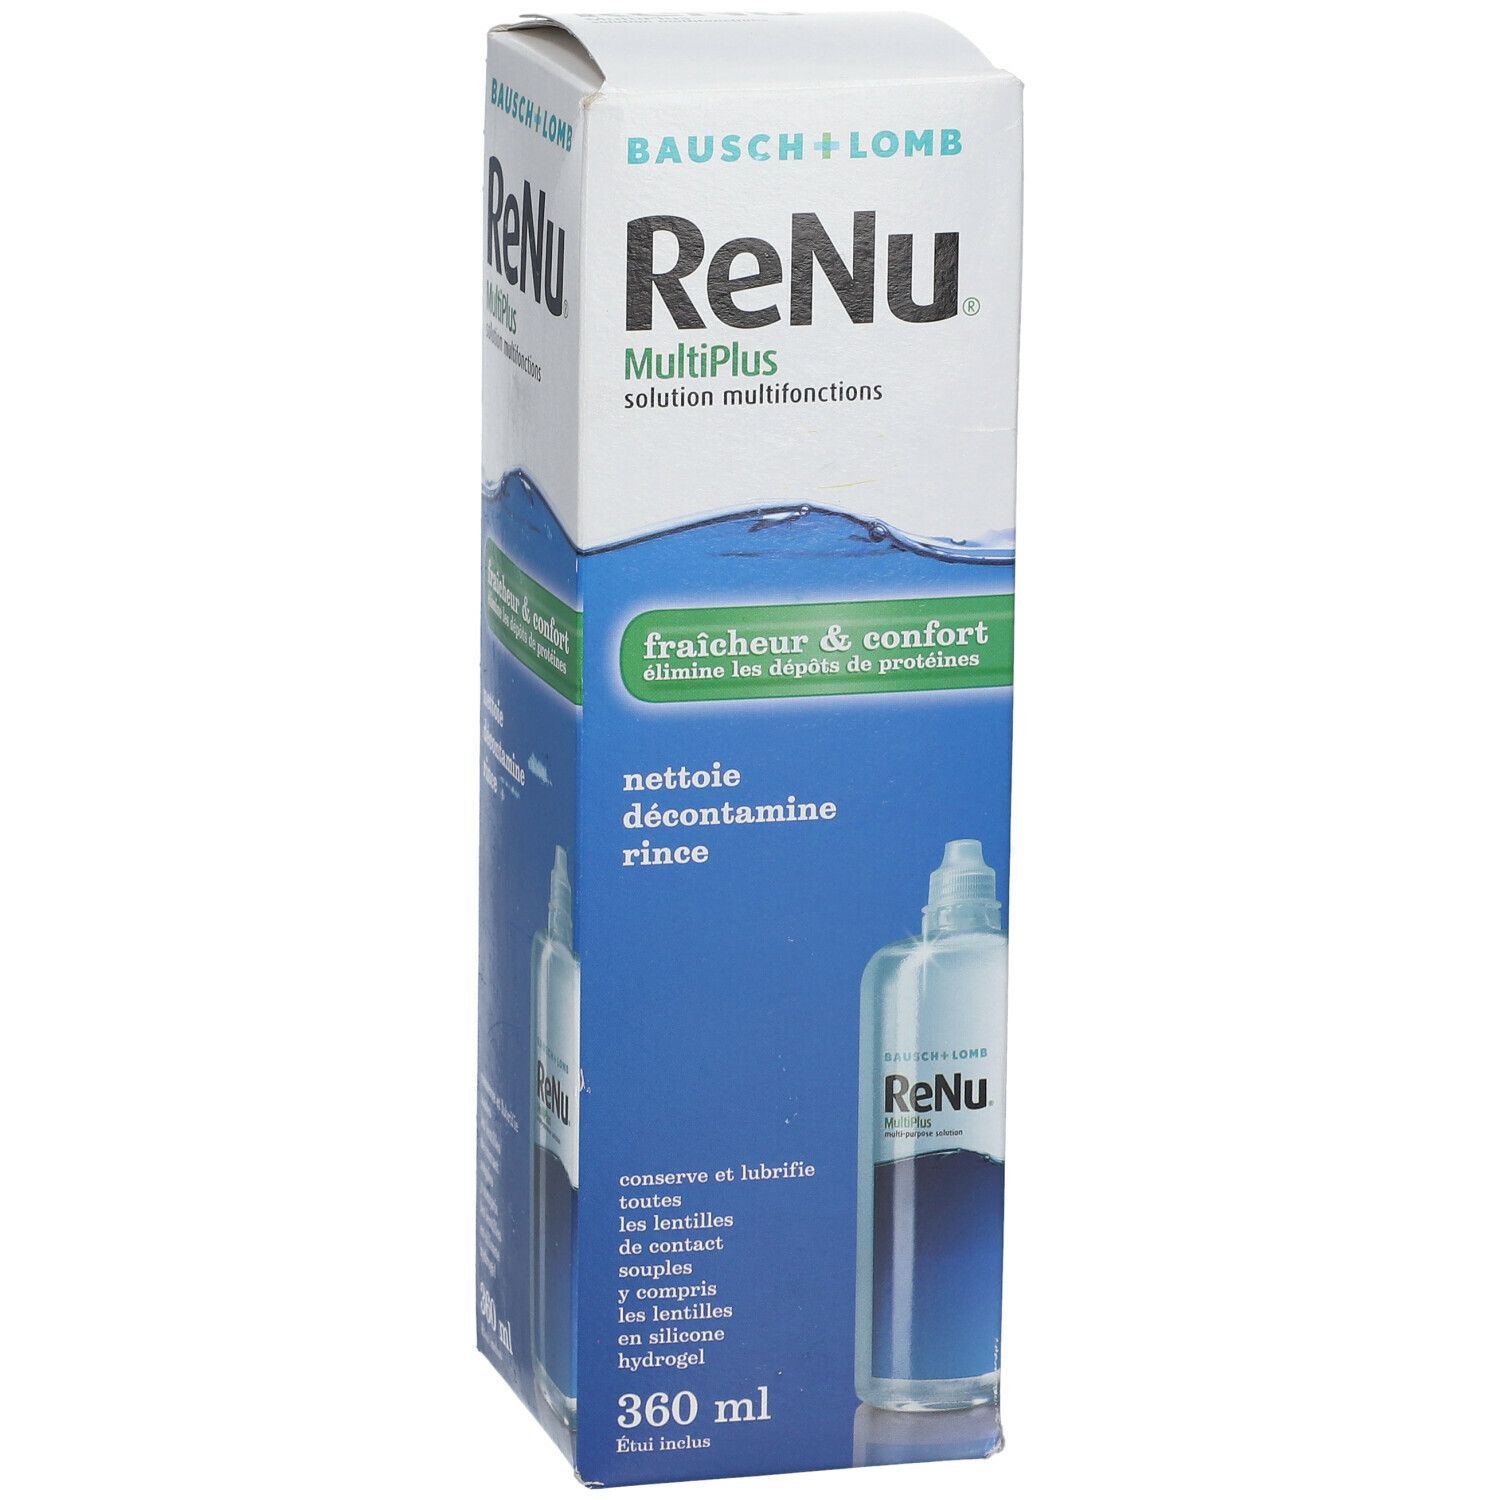 ReNu® MultiPlus Solution Multifonctions Fraîcheur & Confort